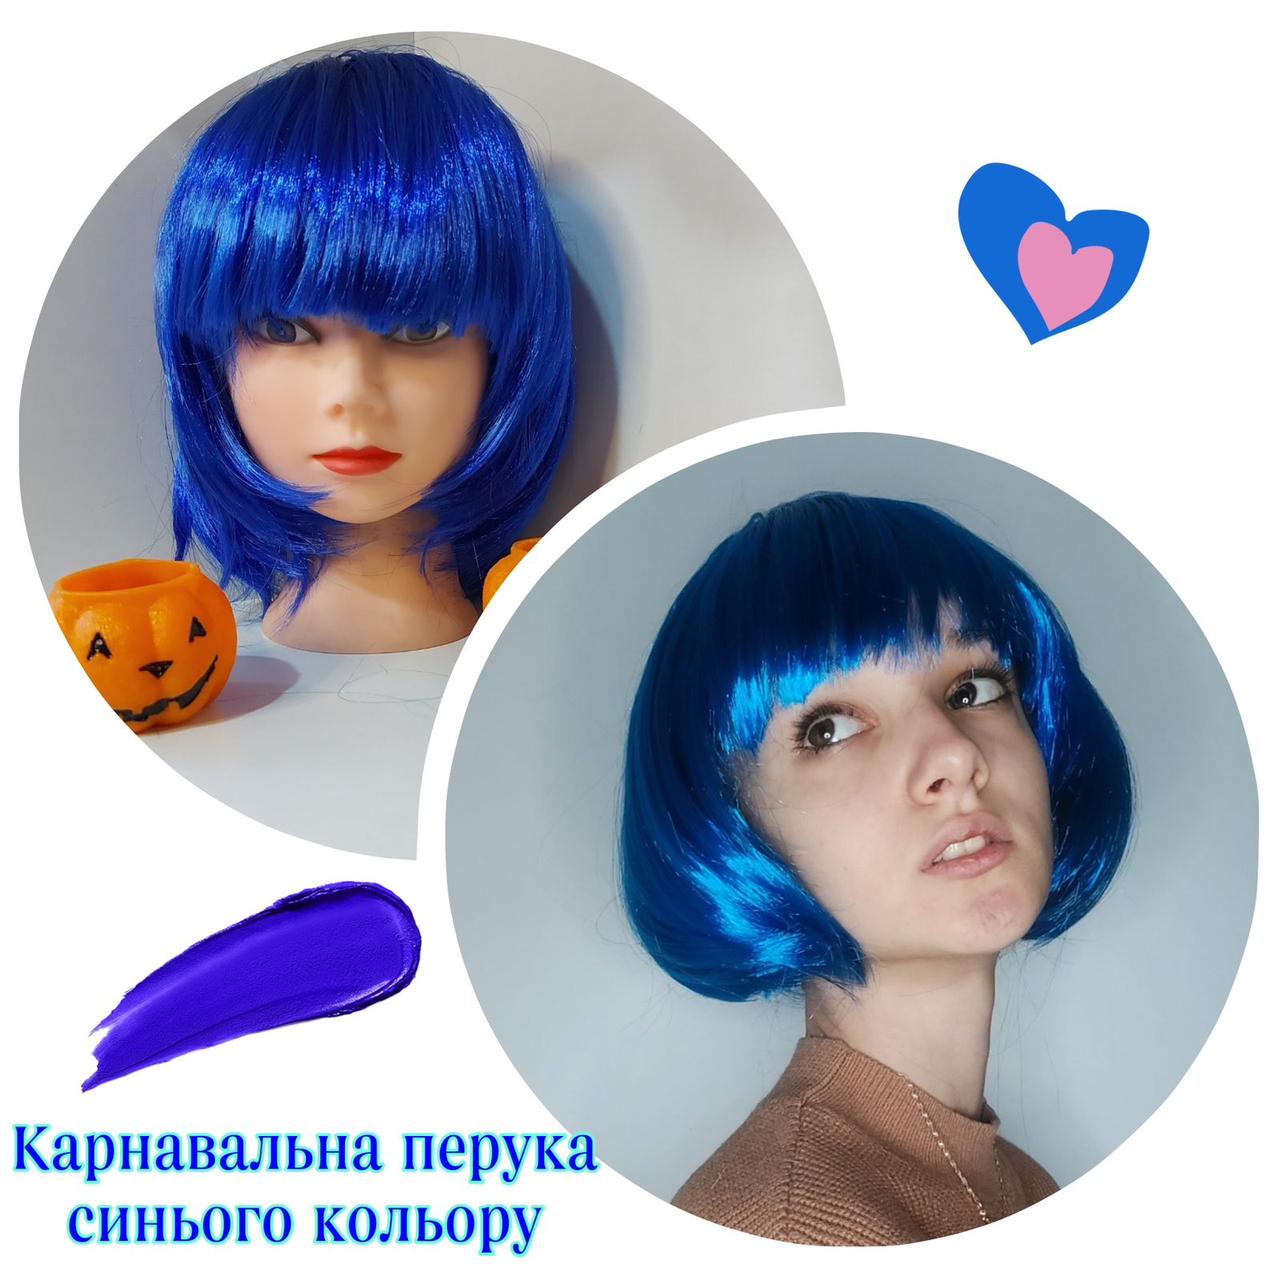 Карнавальна перука синього кольору каре + шапочка під перуку в комплекті